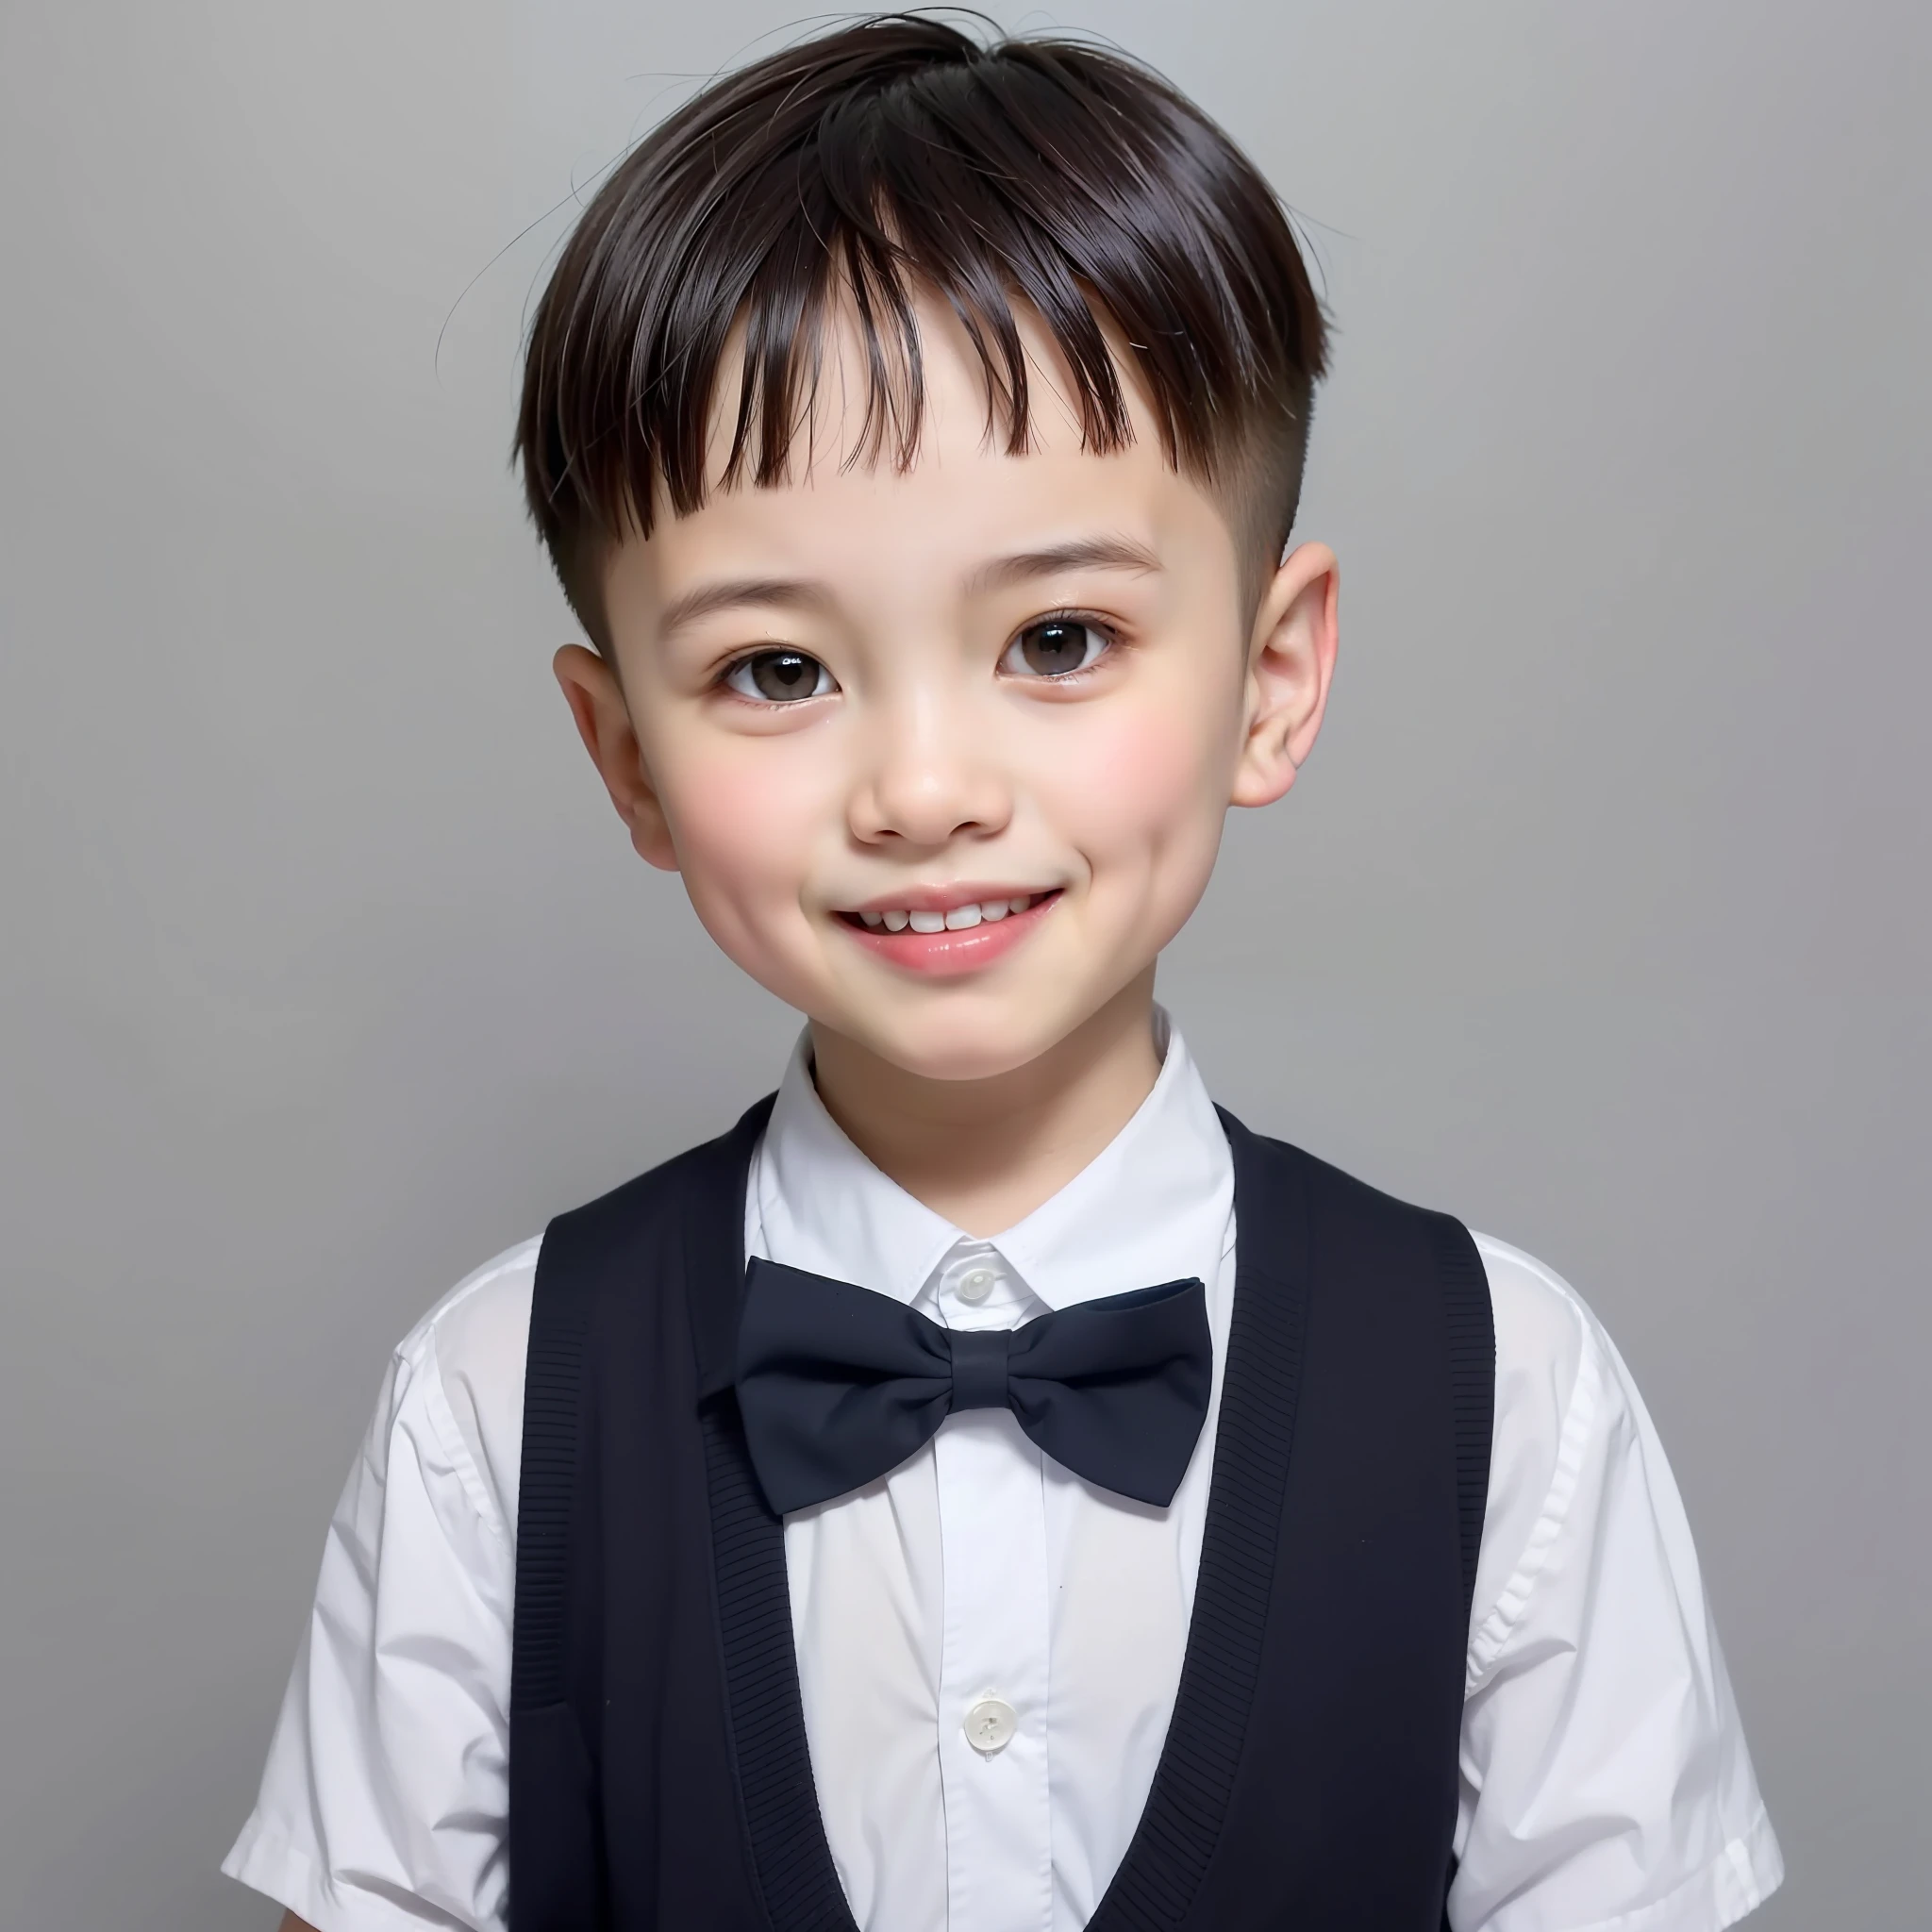 현대적인 스타일, 흰 바탕, 중국 아동 신분증 사진, 멋있는, 웃는 소년, 검은 눈, 플랫 헤드, 나비 넥타이